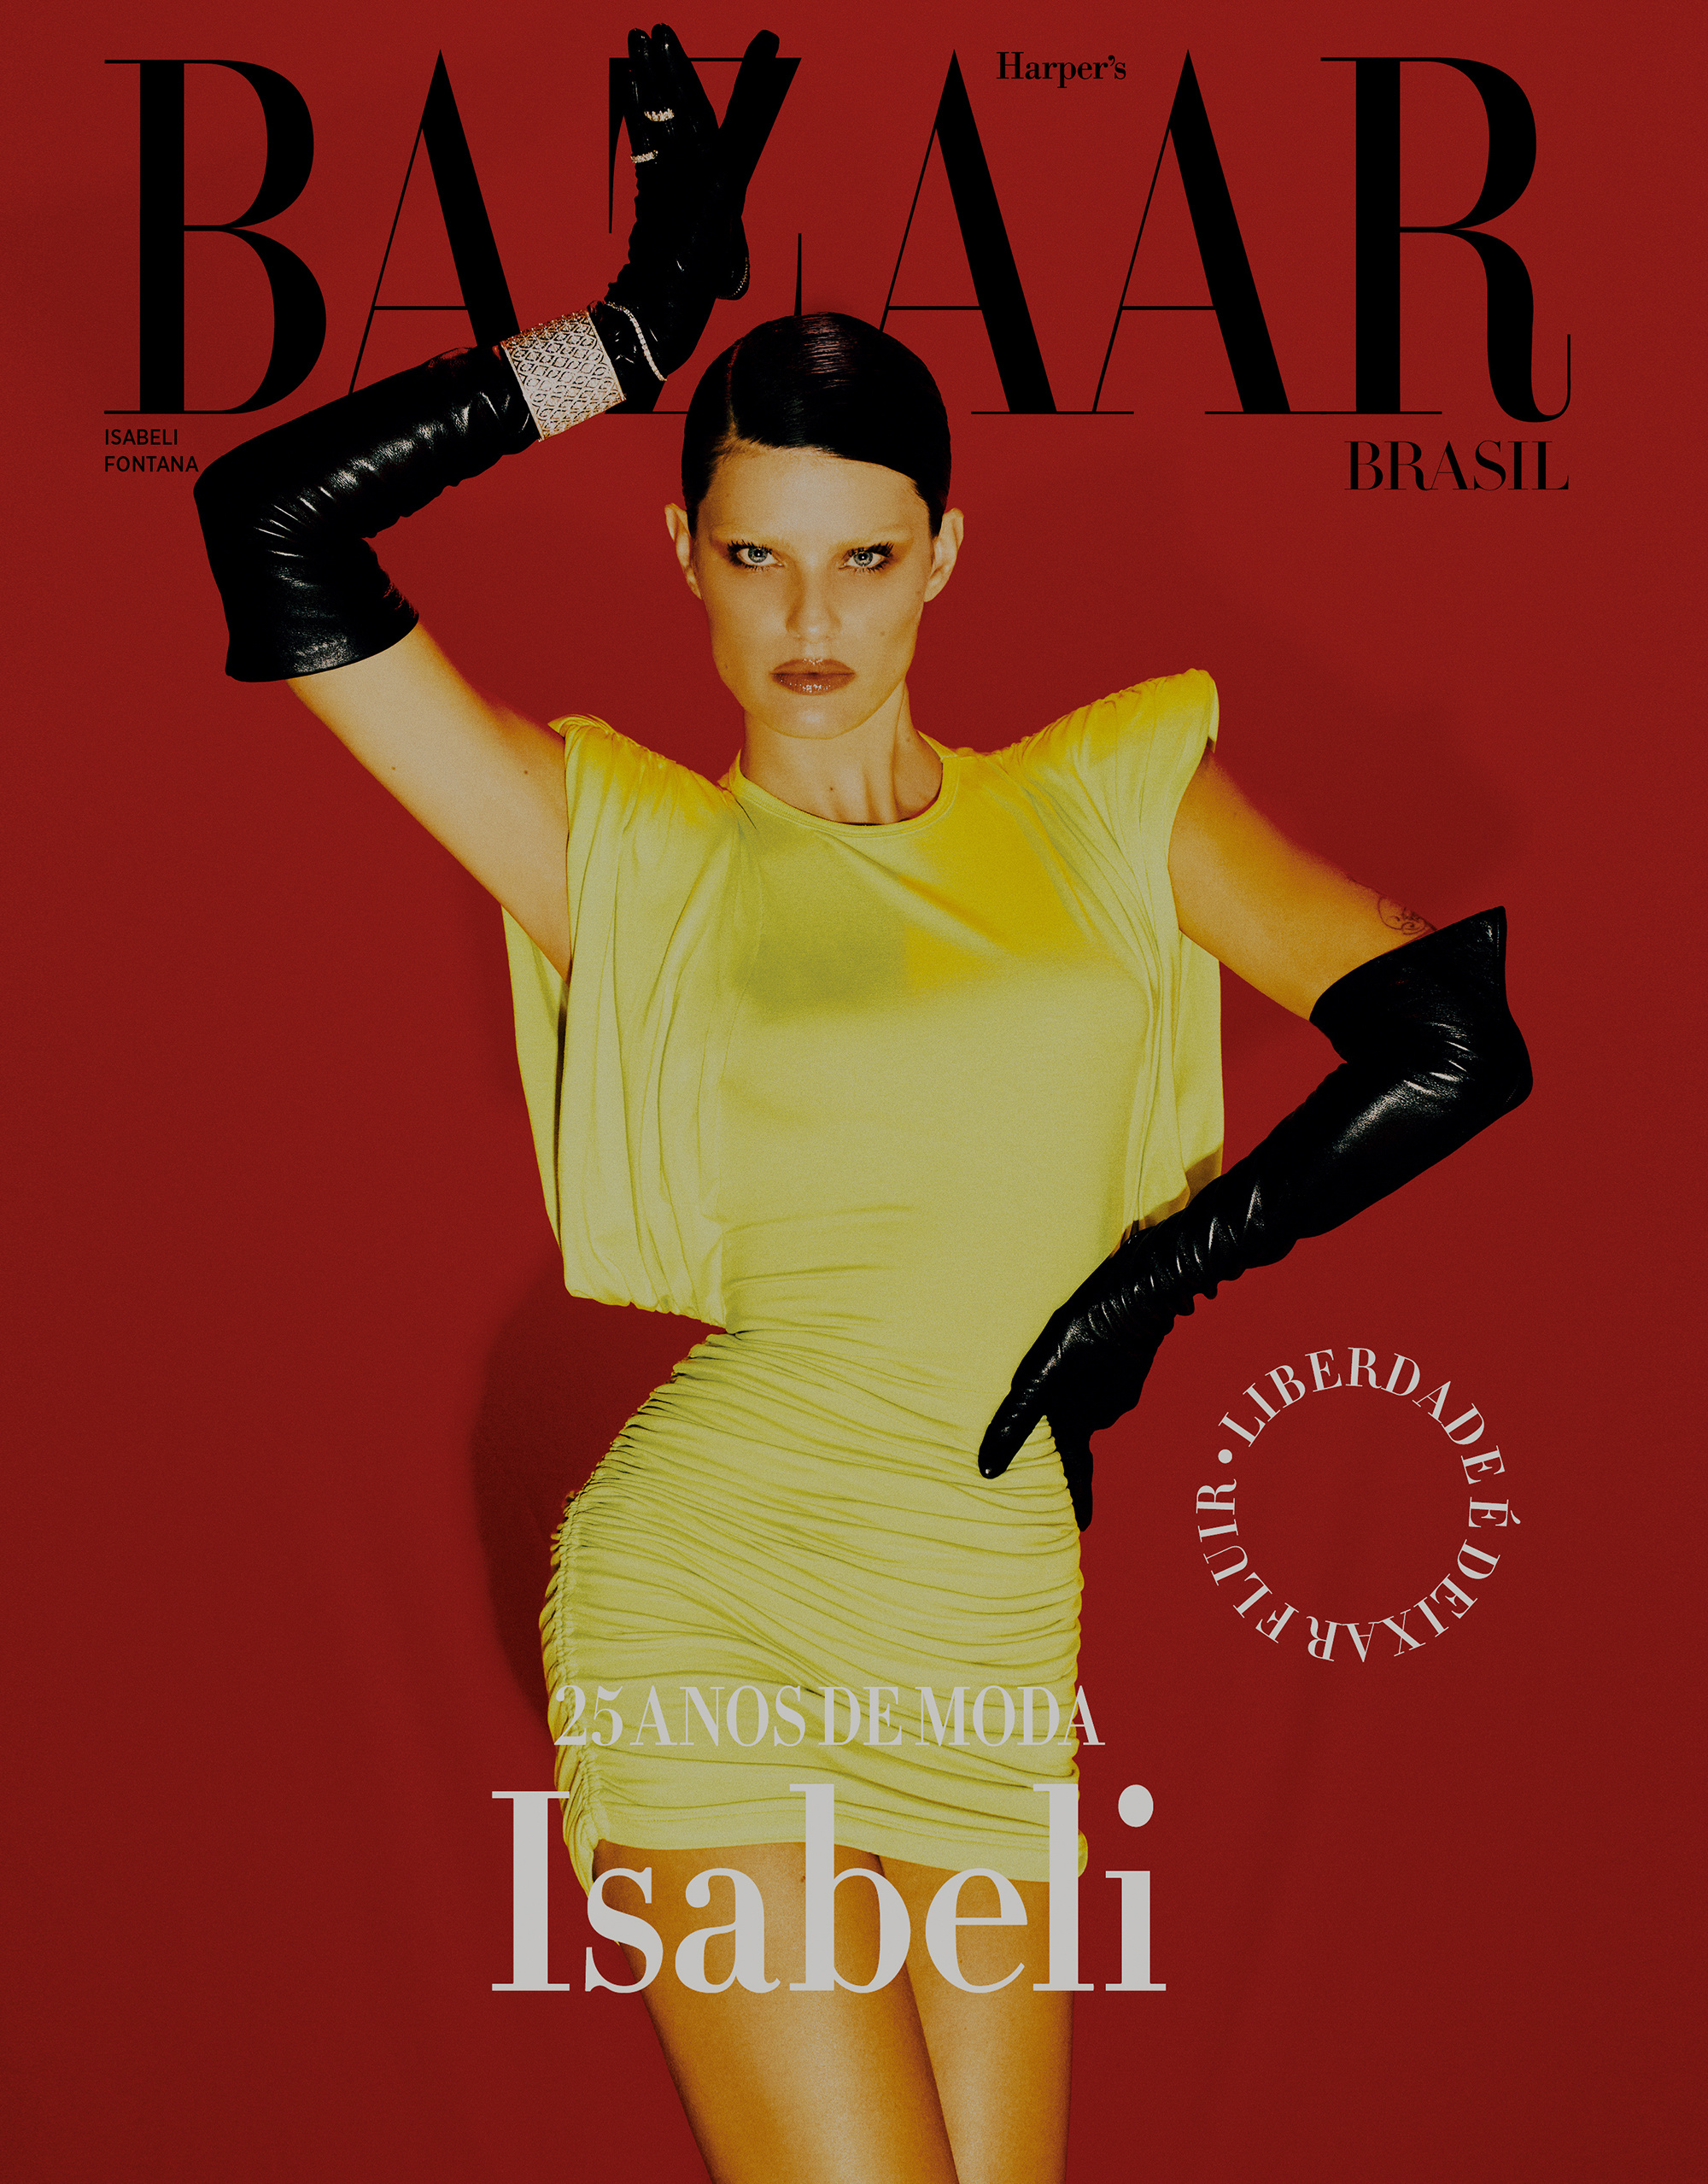 Harper's Bazaar Brazil September 2021 Cover Story Editorial